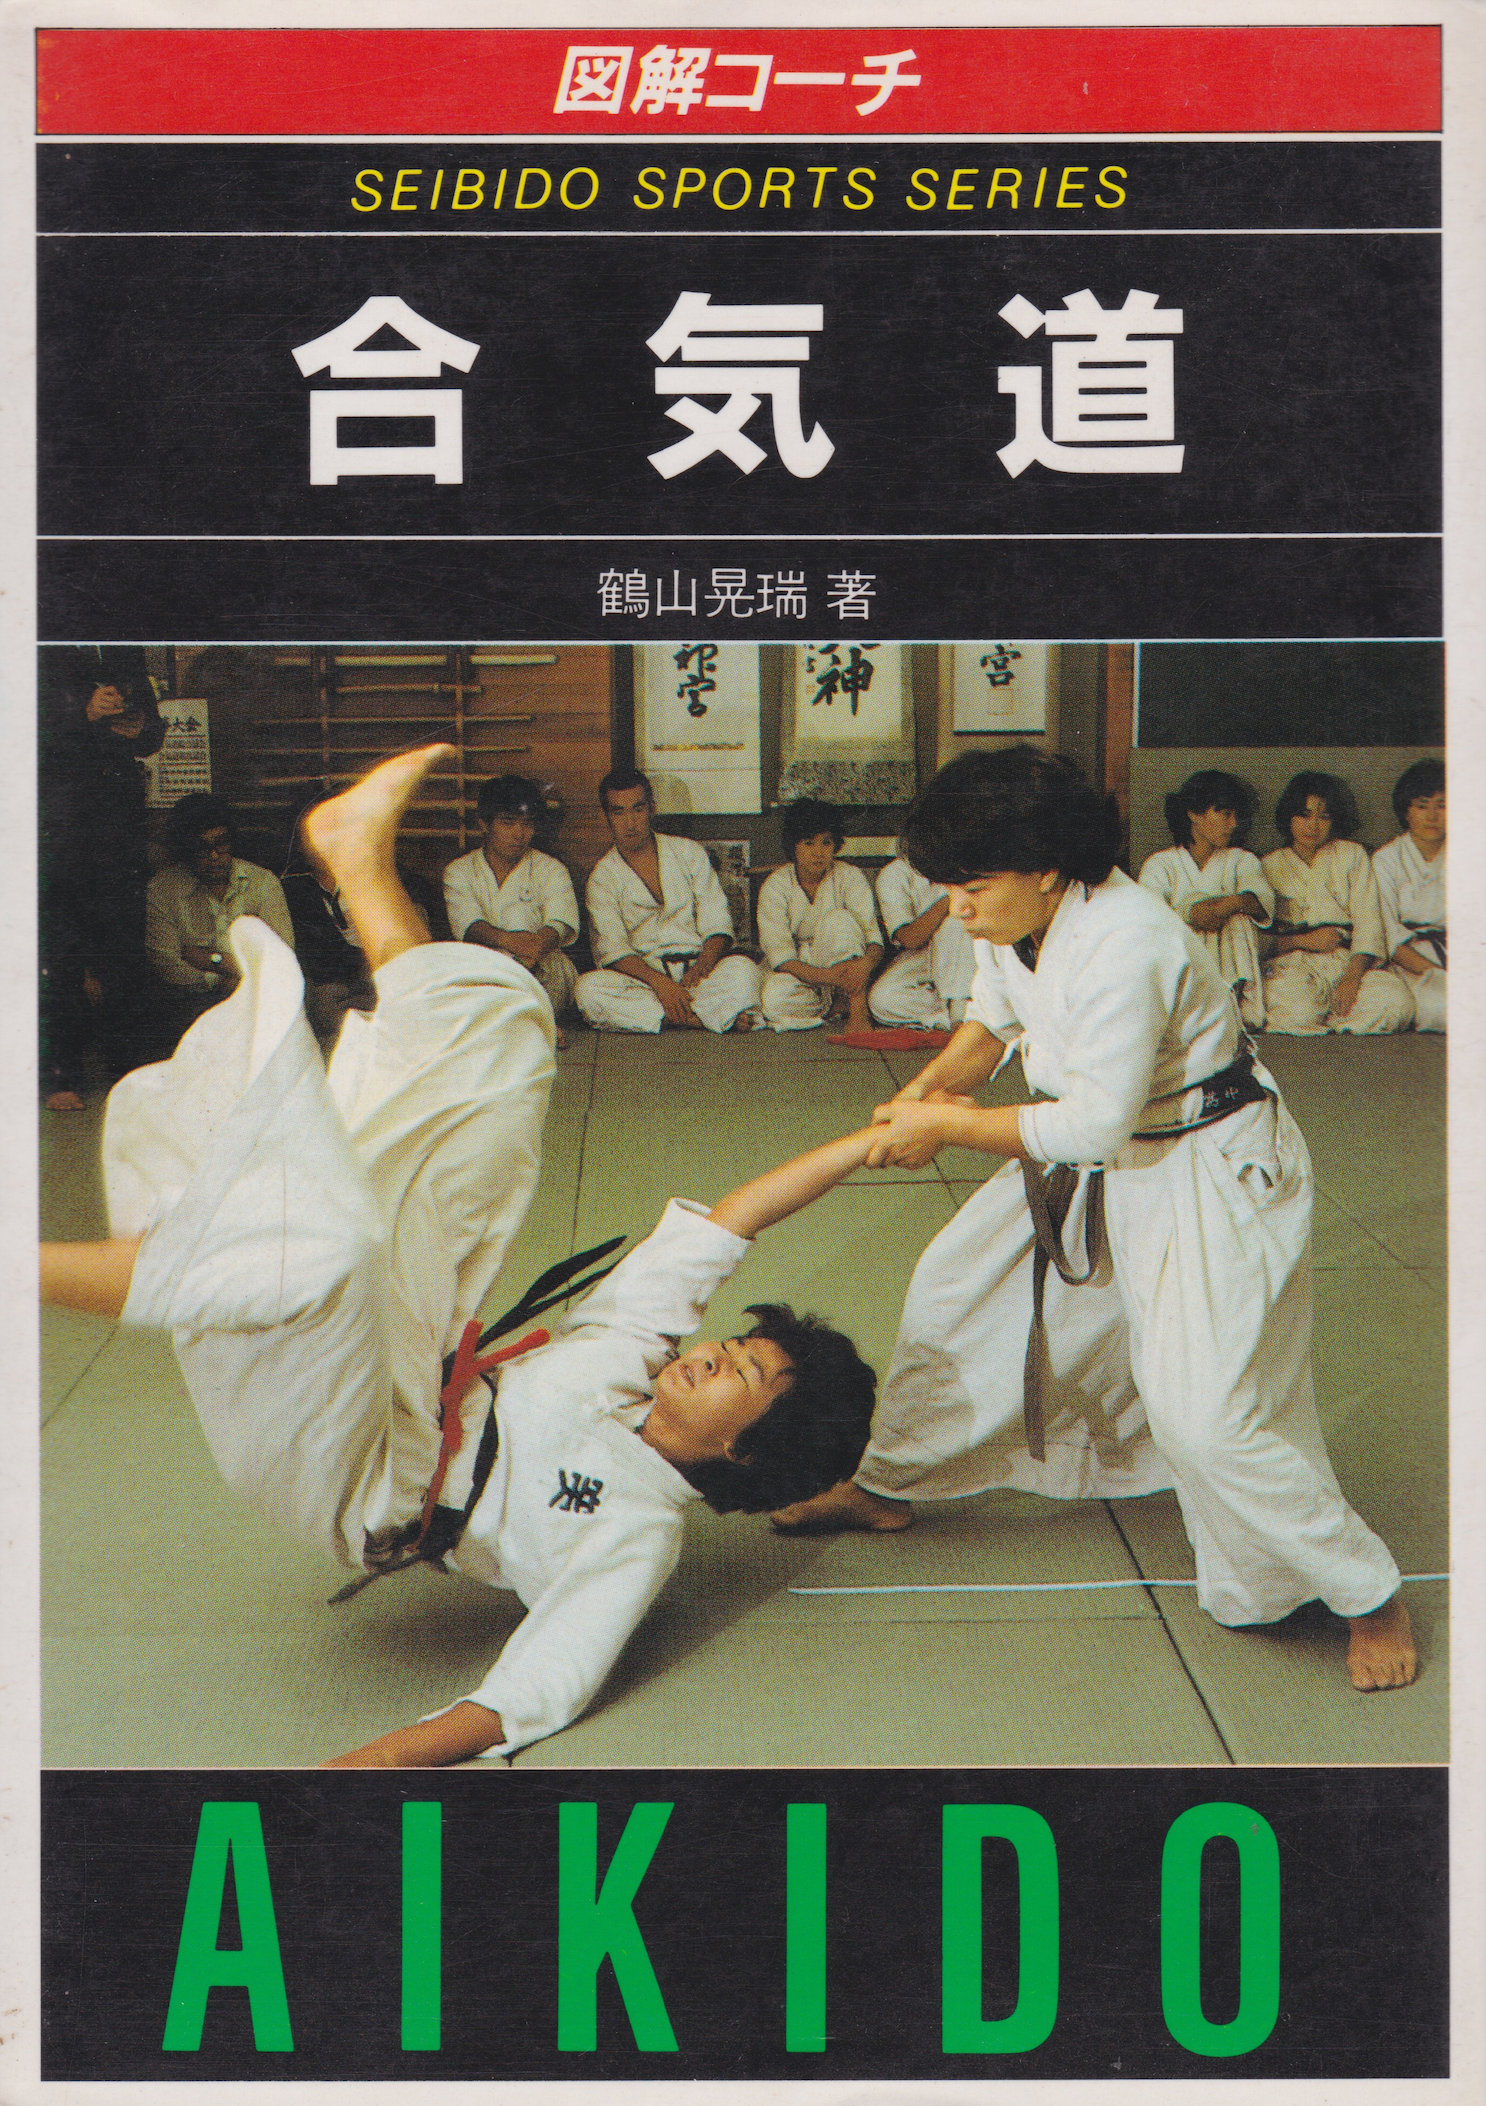 Illustrated Coach Aikido (Aikijujutsu) Book by Kozui Tsuruyama (Preowned) - Budovideos